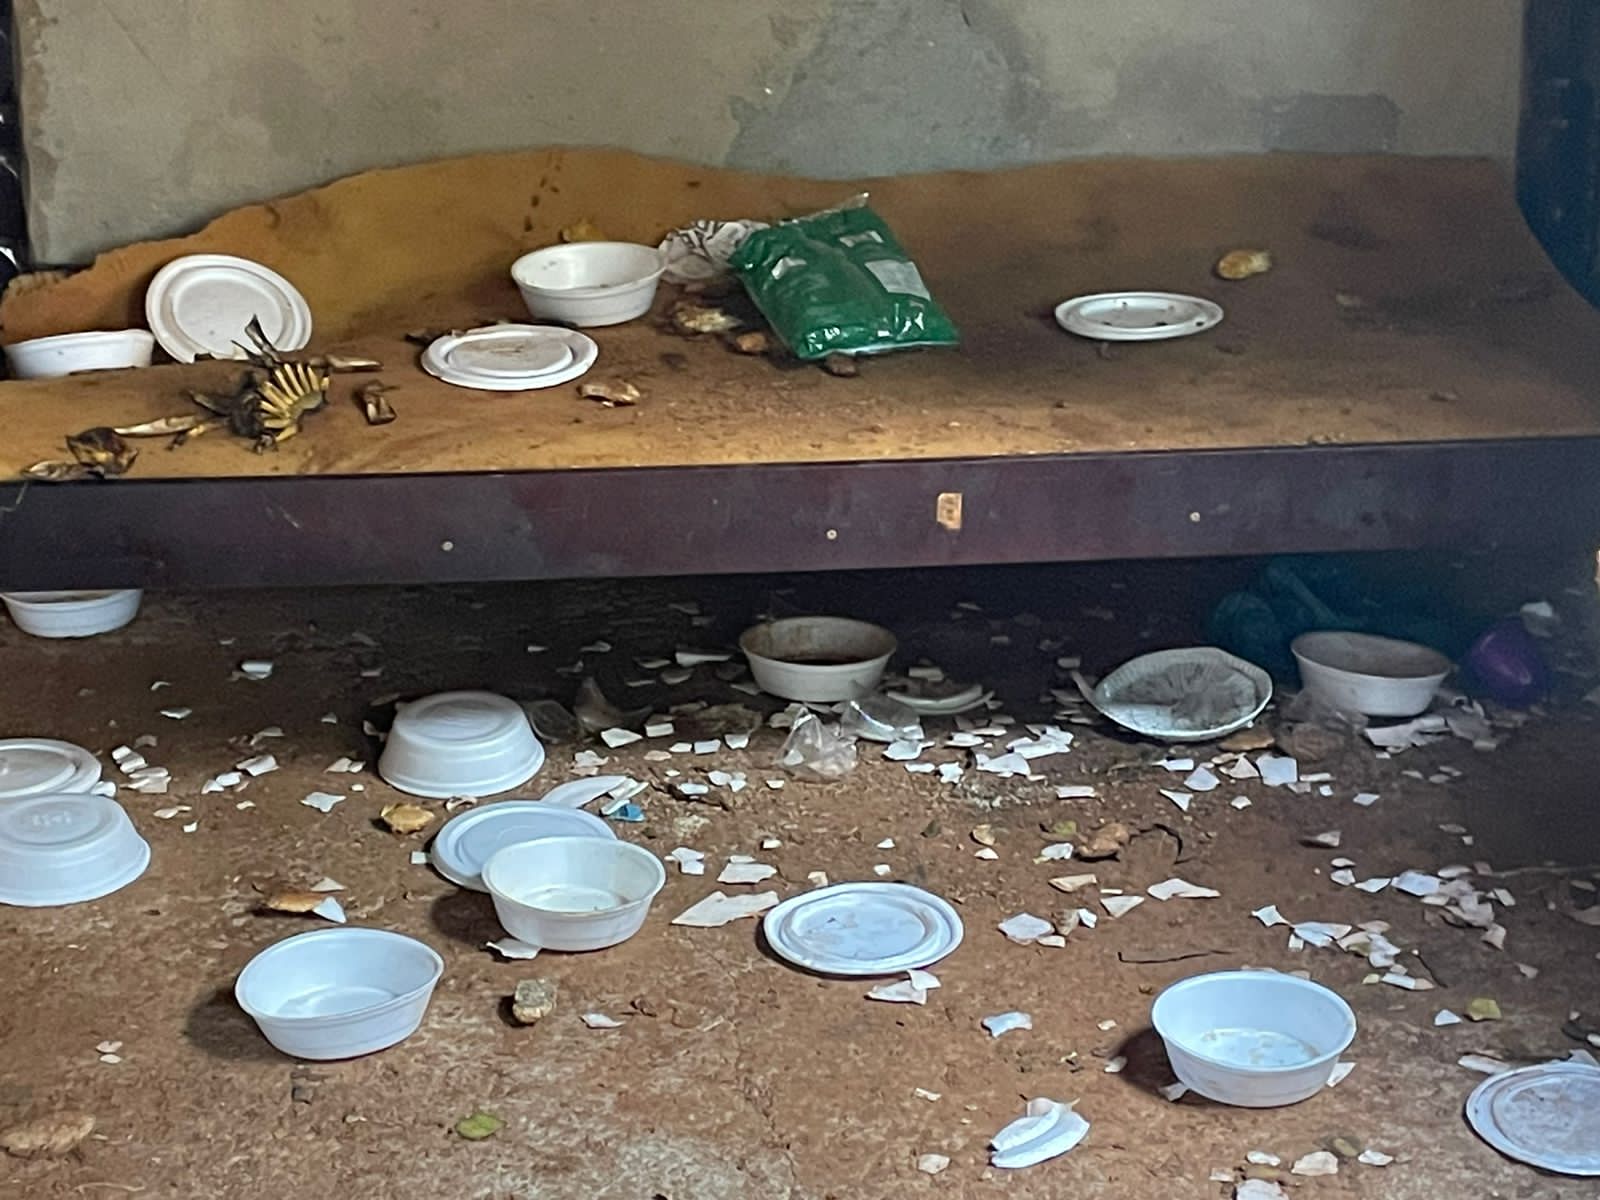 Casa era repleta de restos de alimentos e sujeira | Foto: Divulgação/PMGO